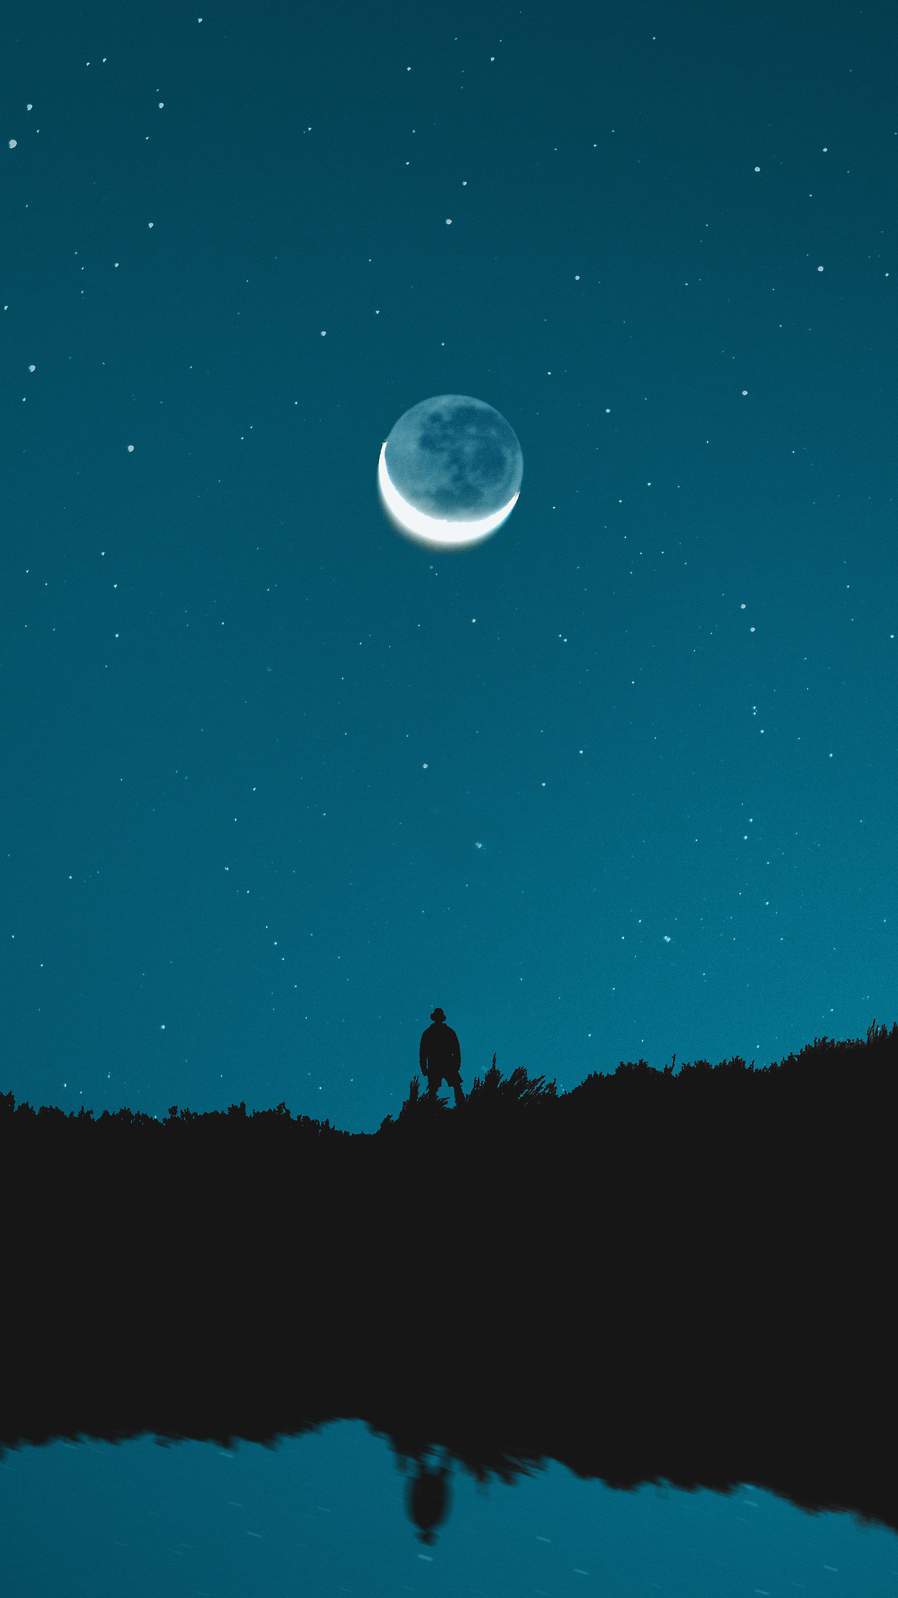 sfondi eclissi per iphone,cielo,luna,chiaro di luna,leggero,notte